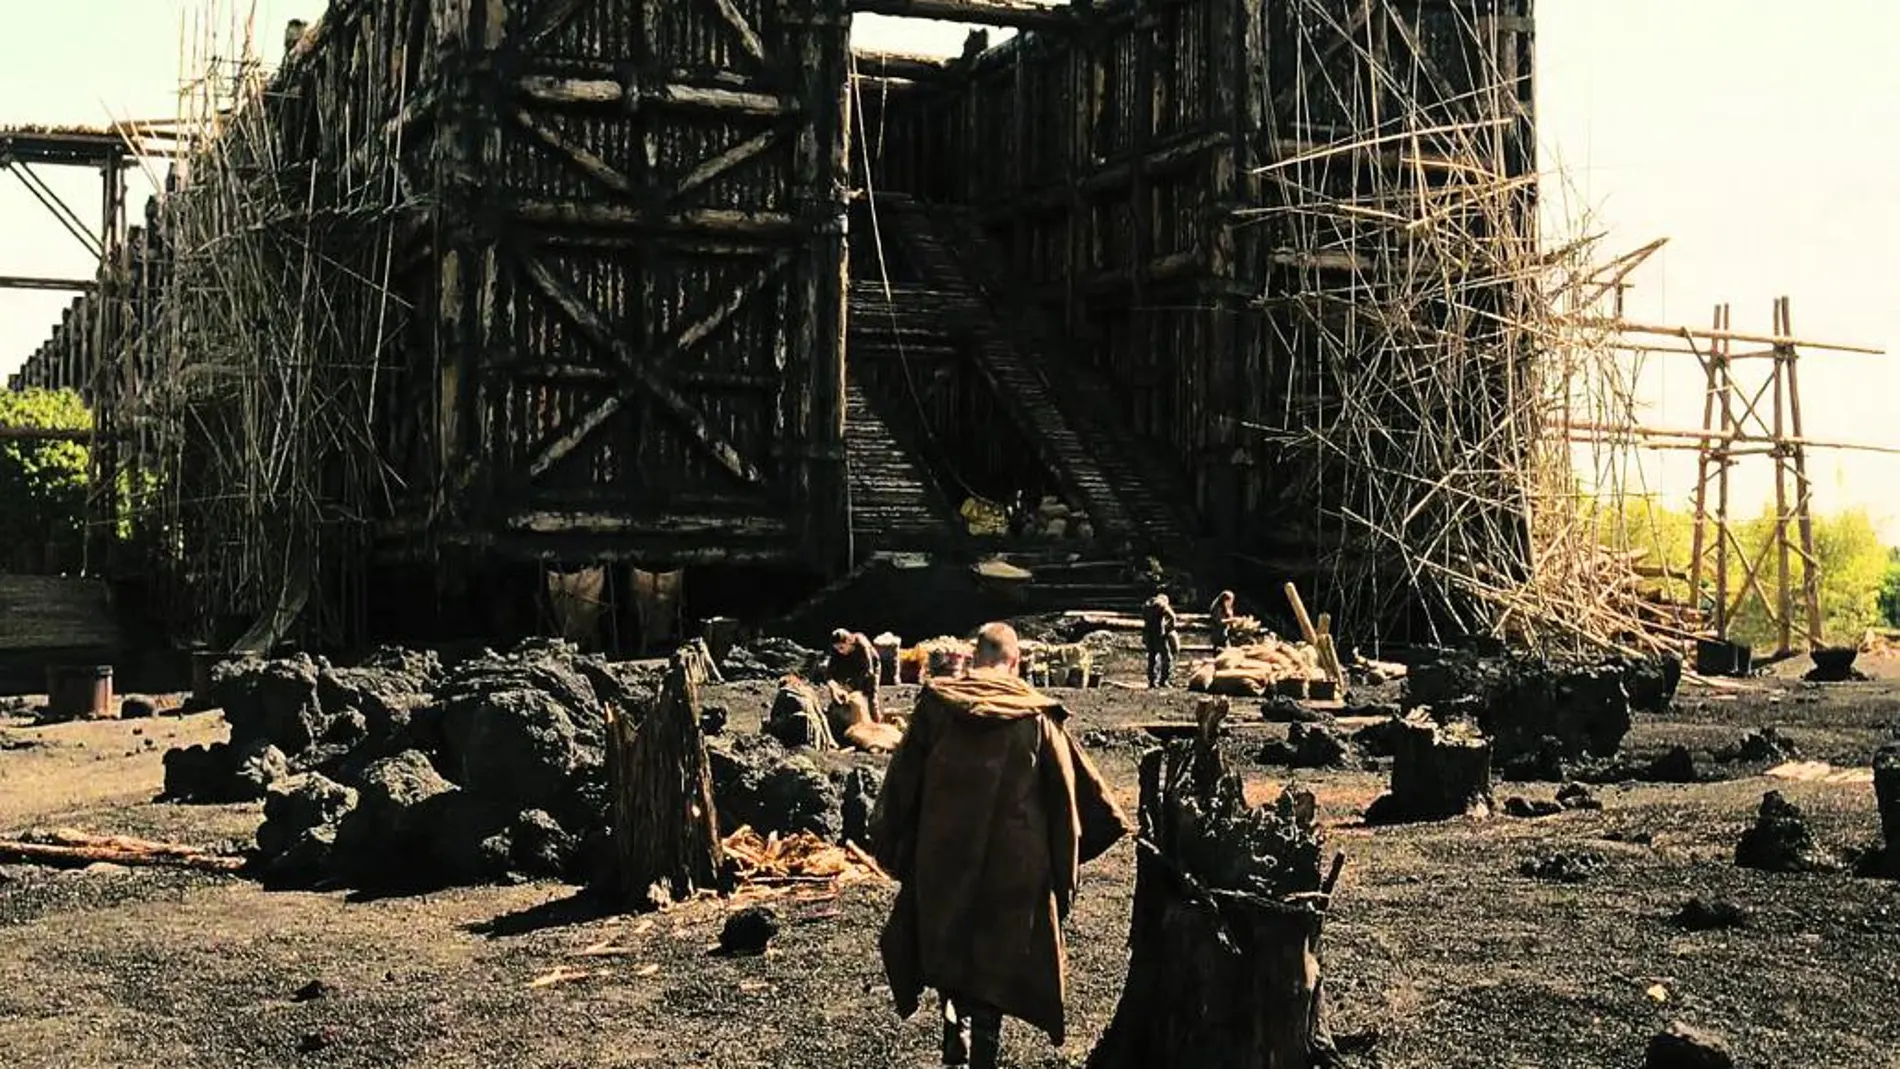 Russell Crowe protagonizó en 2014 la hasta ahora última versión cinematográfica del Diluvio que Darren Aronofsky plasmó en «Noé»